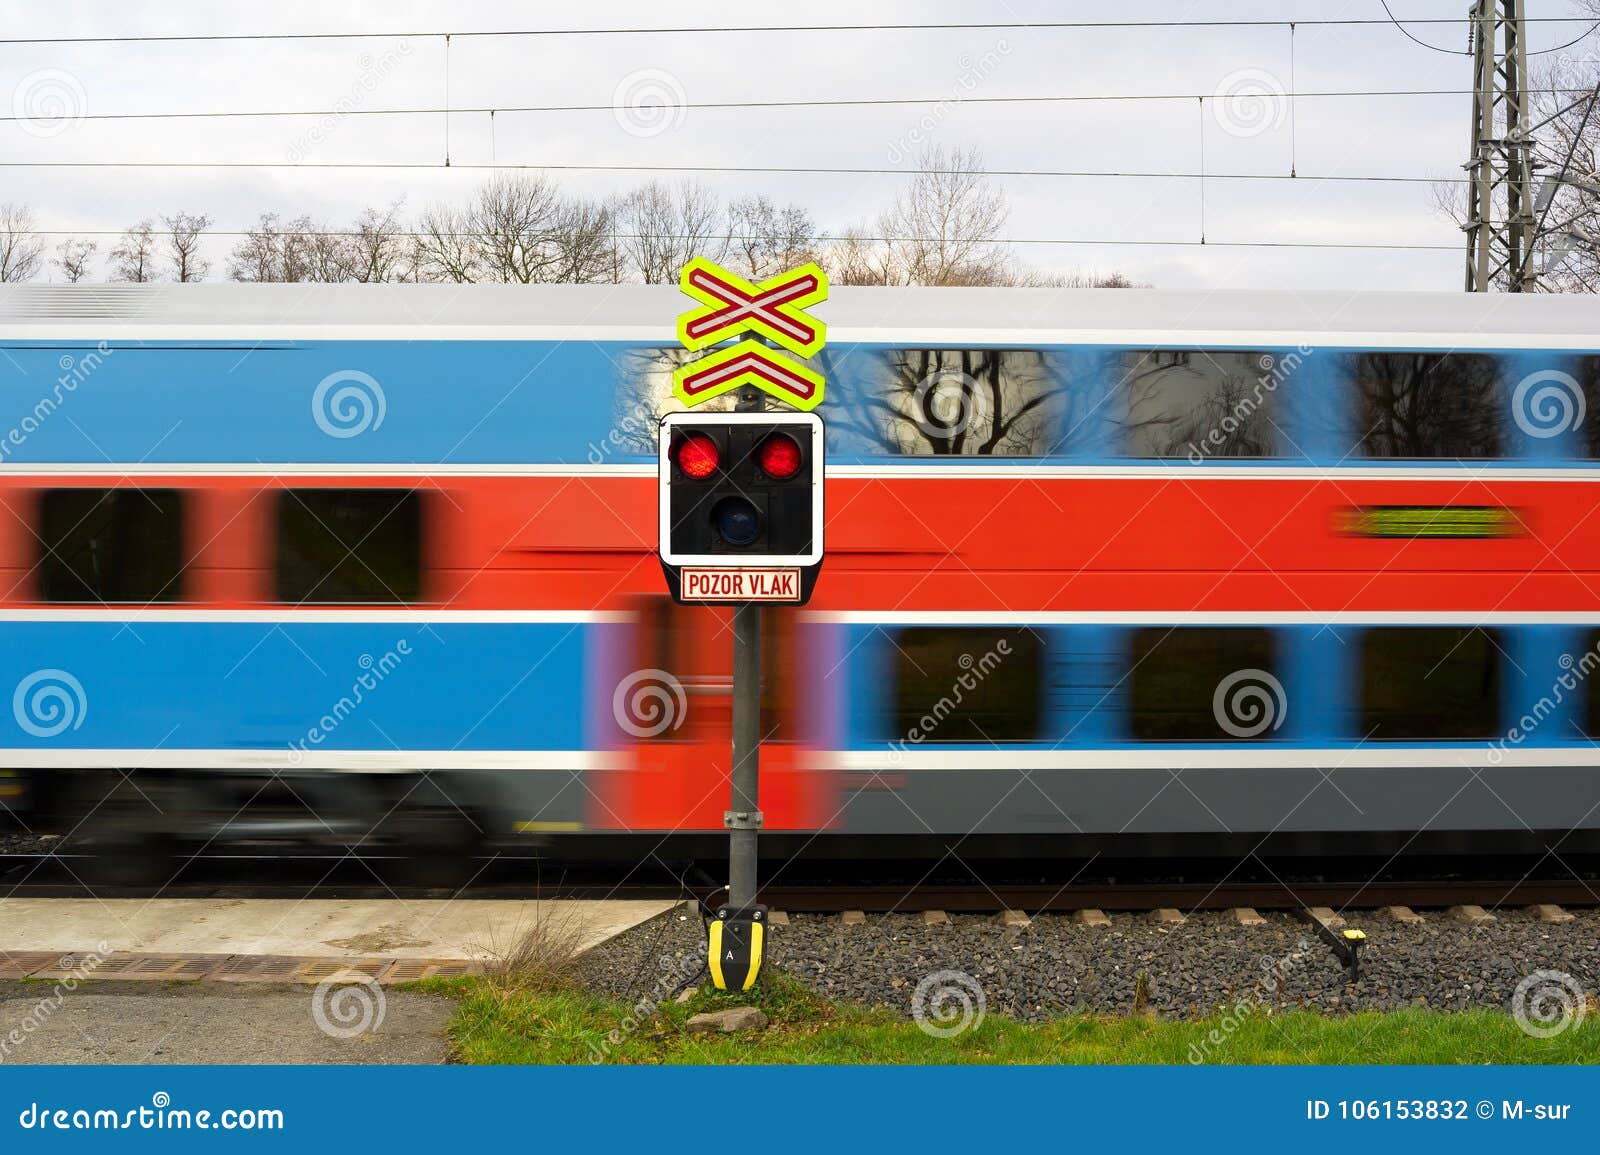 Внимание поезд четный. Поезд pozor vlak. Train Caution. Внимание, поезд отправляется! / Attention au départ (2021).